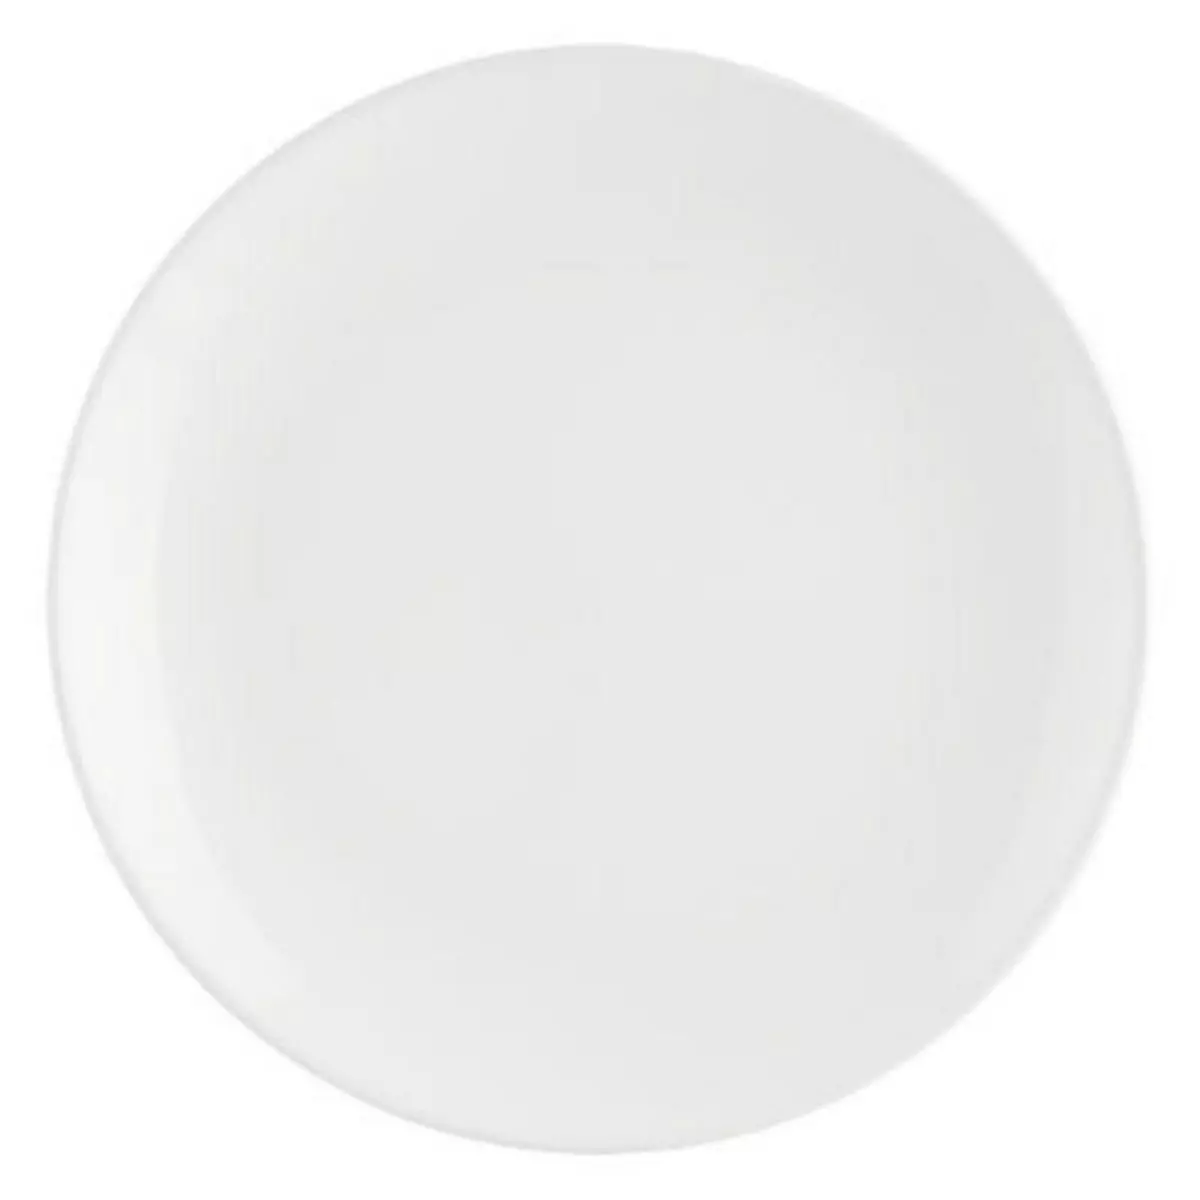  Lot de 6 Assiettes Plates  Colorama  26cm Blanc